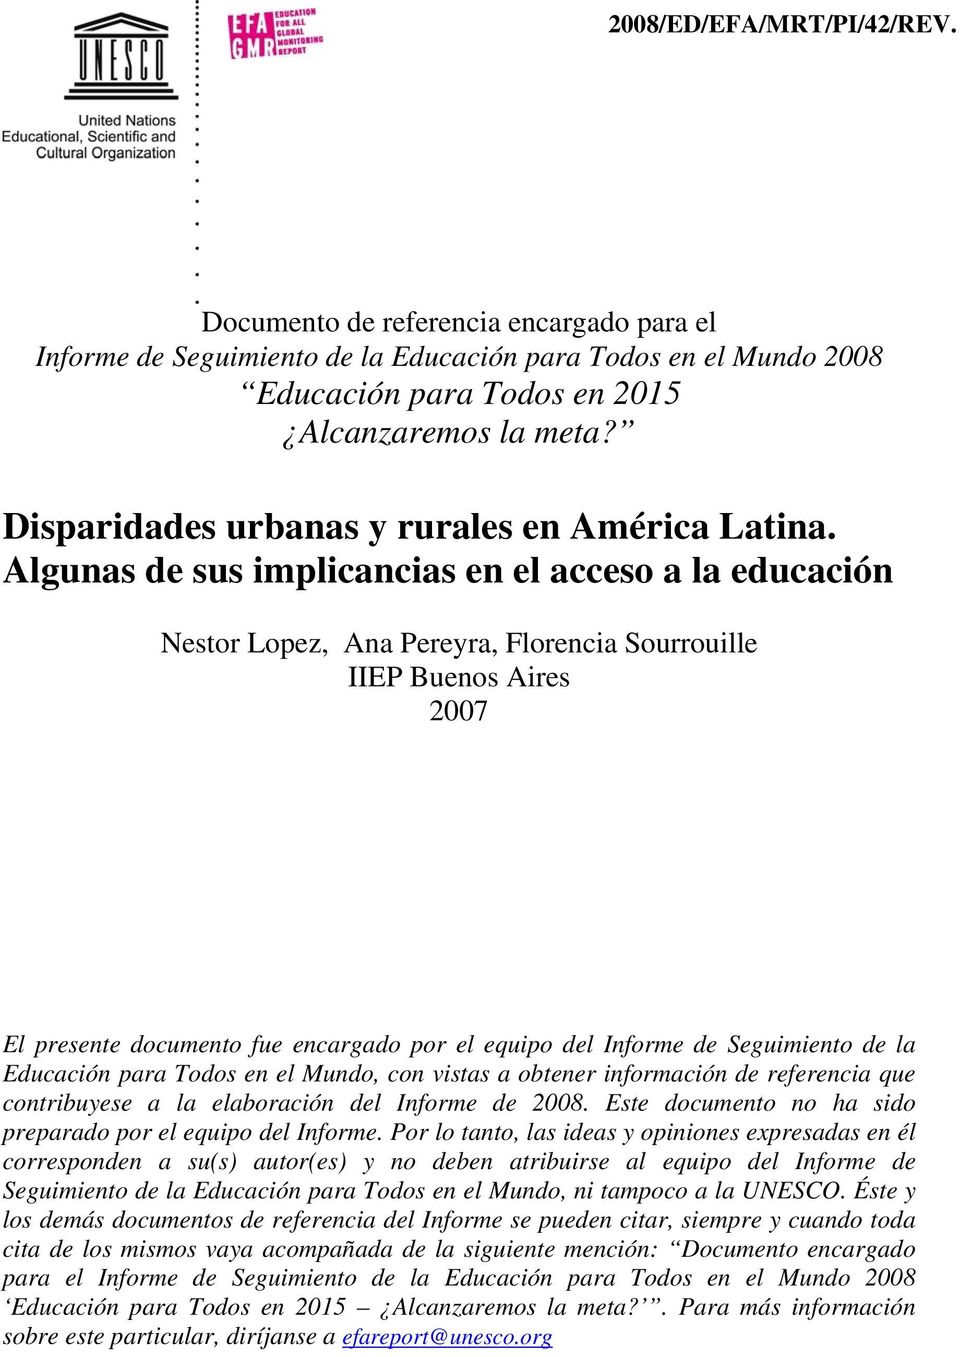 Algunas de sus implicancias en el acceso a la educación Nestor Lopez, Ana Pereyra, Florencia Sourrouille IIEP Buenos Aires 2007 El presente documento fue encargado por el equipo del Informe de